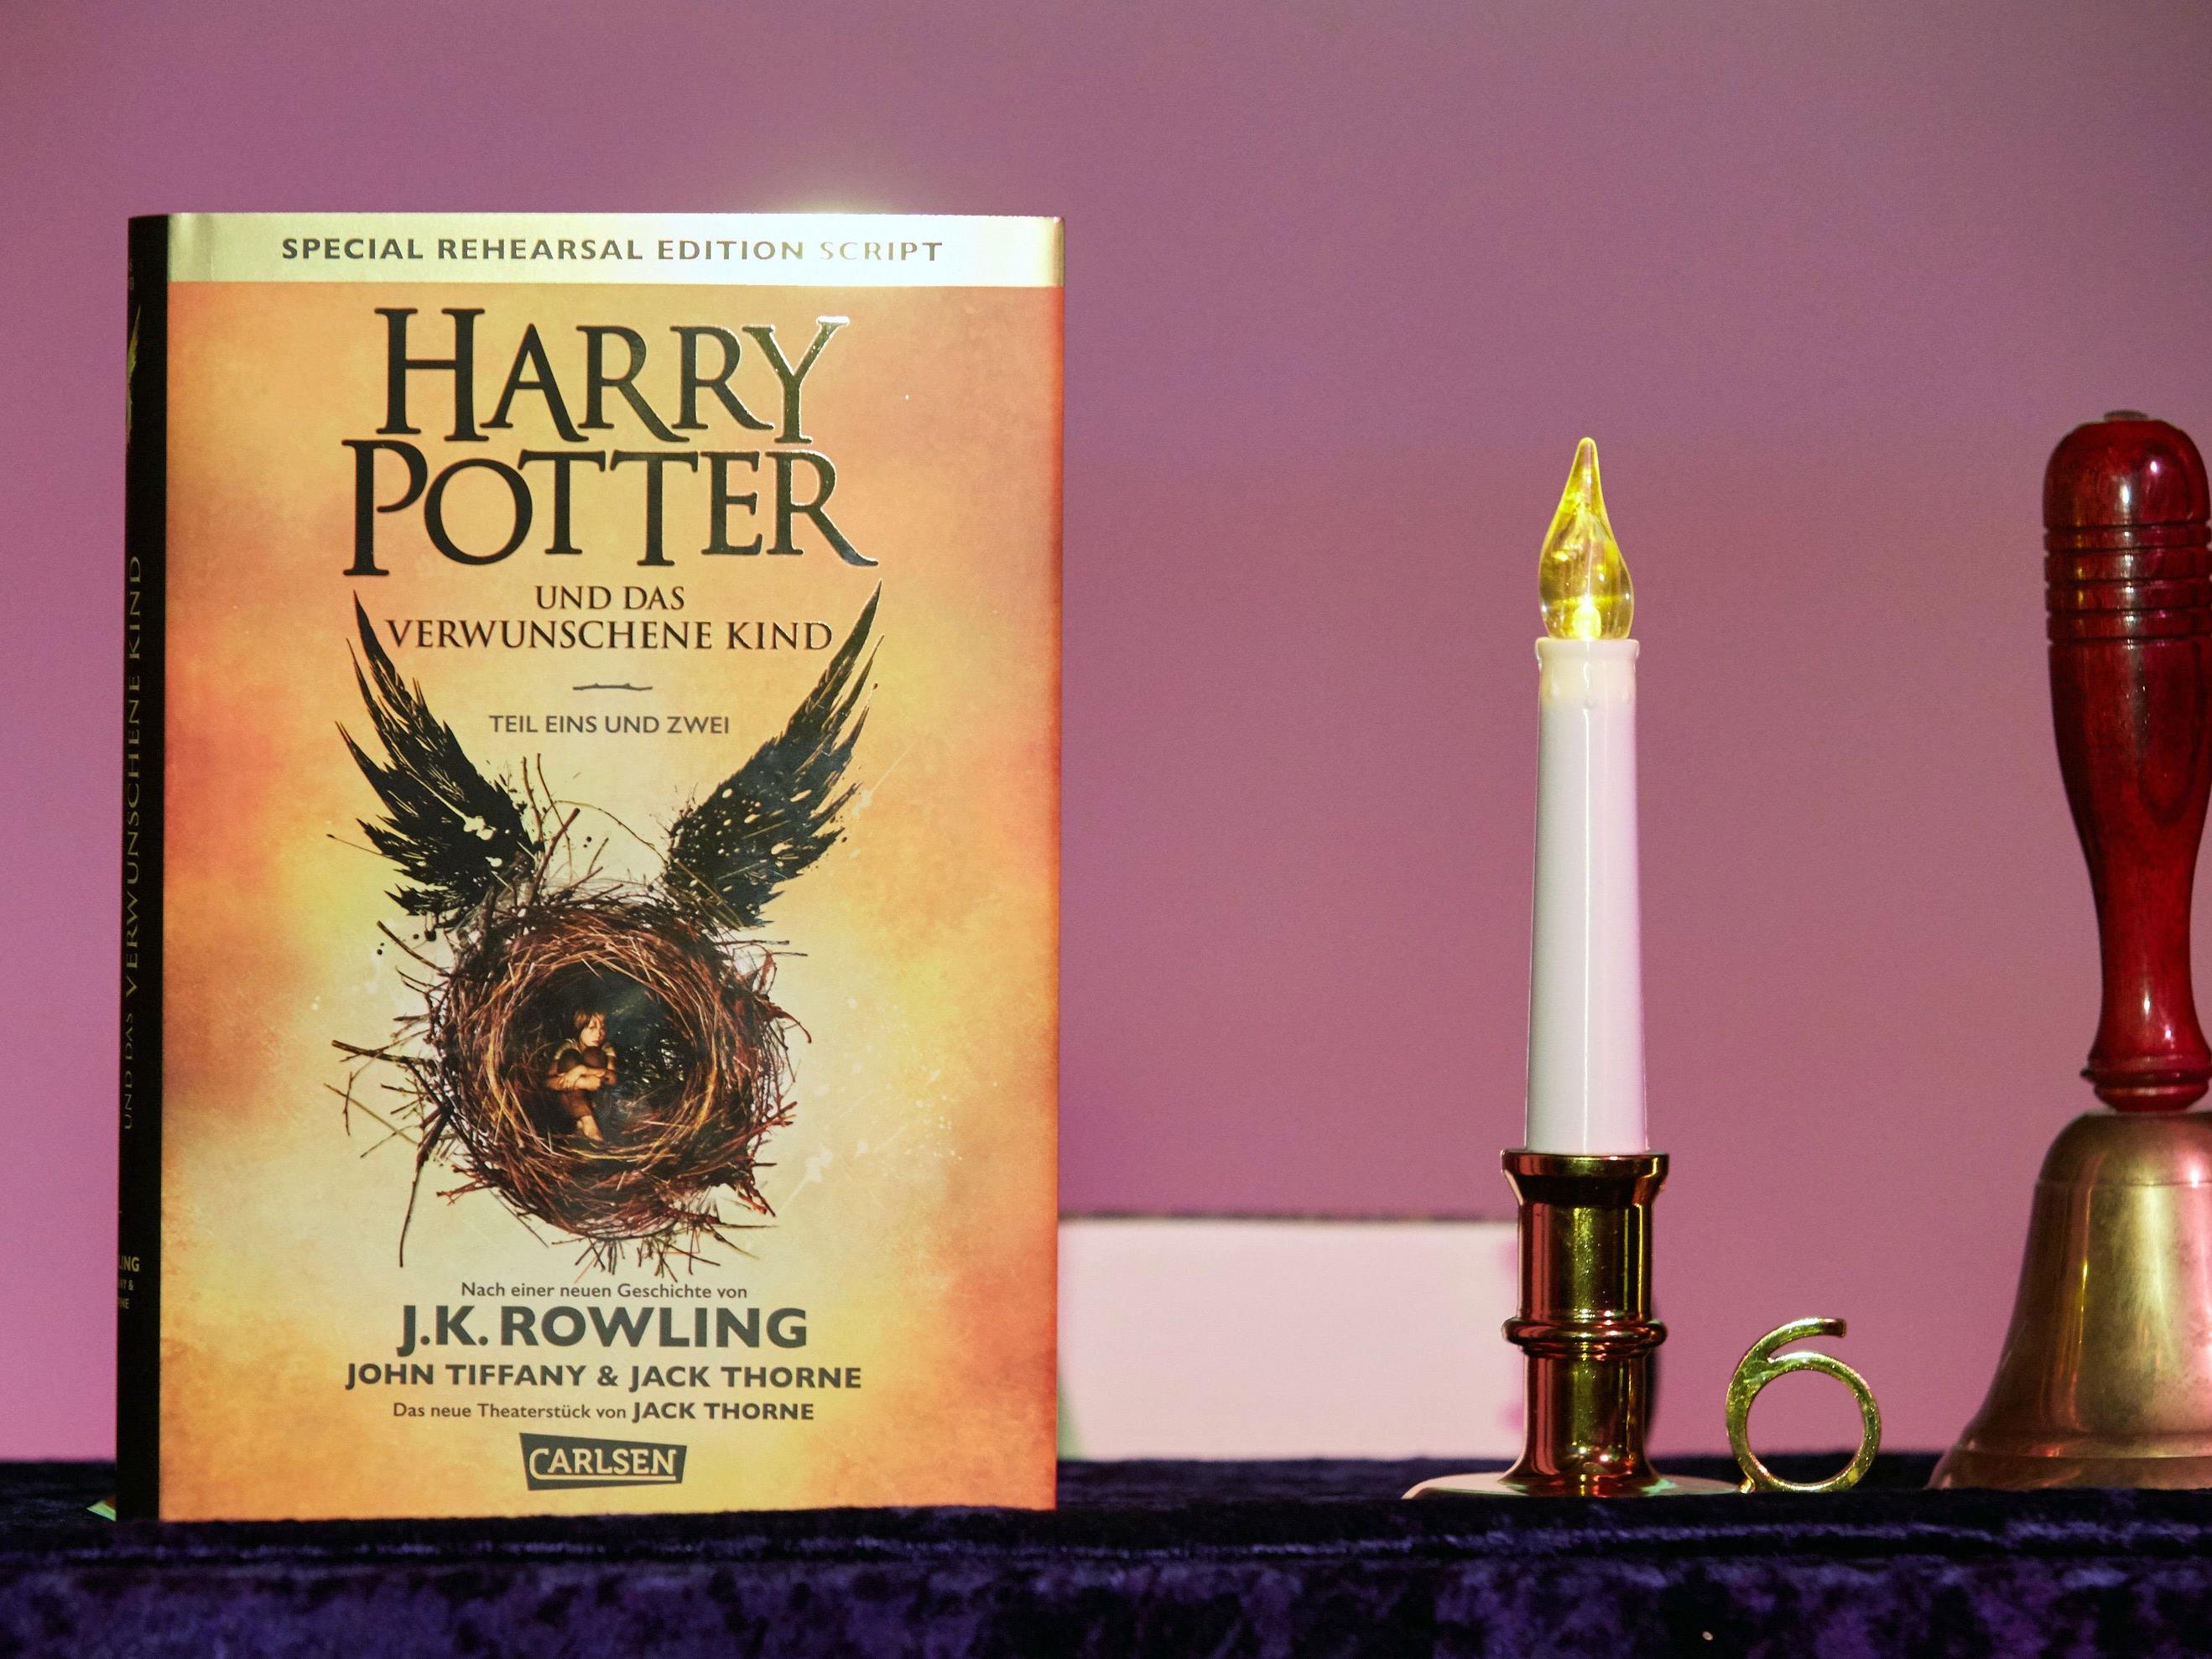 Die deutschsprachige Ausgabe des Buches "Harry Potter und das verwunschene Kind" ist erschienen